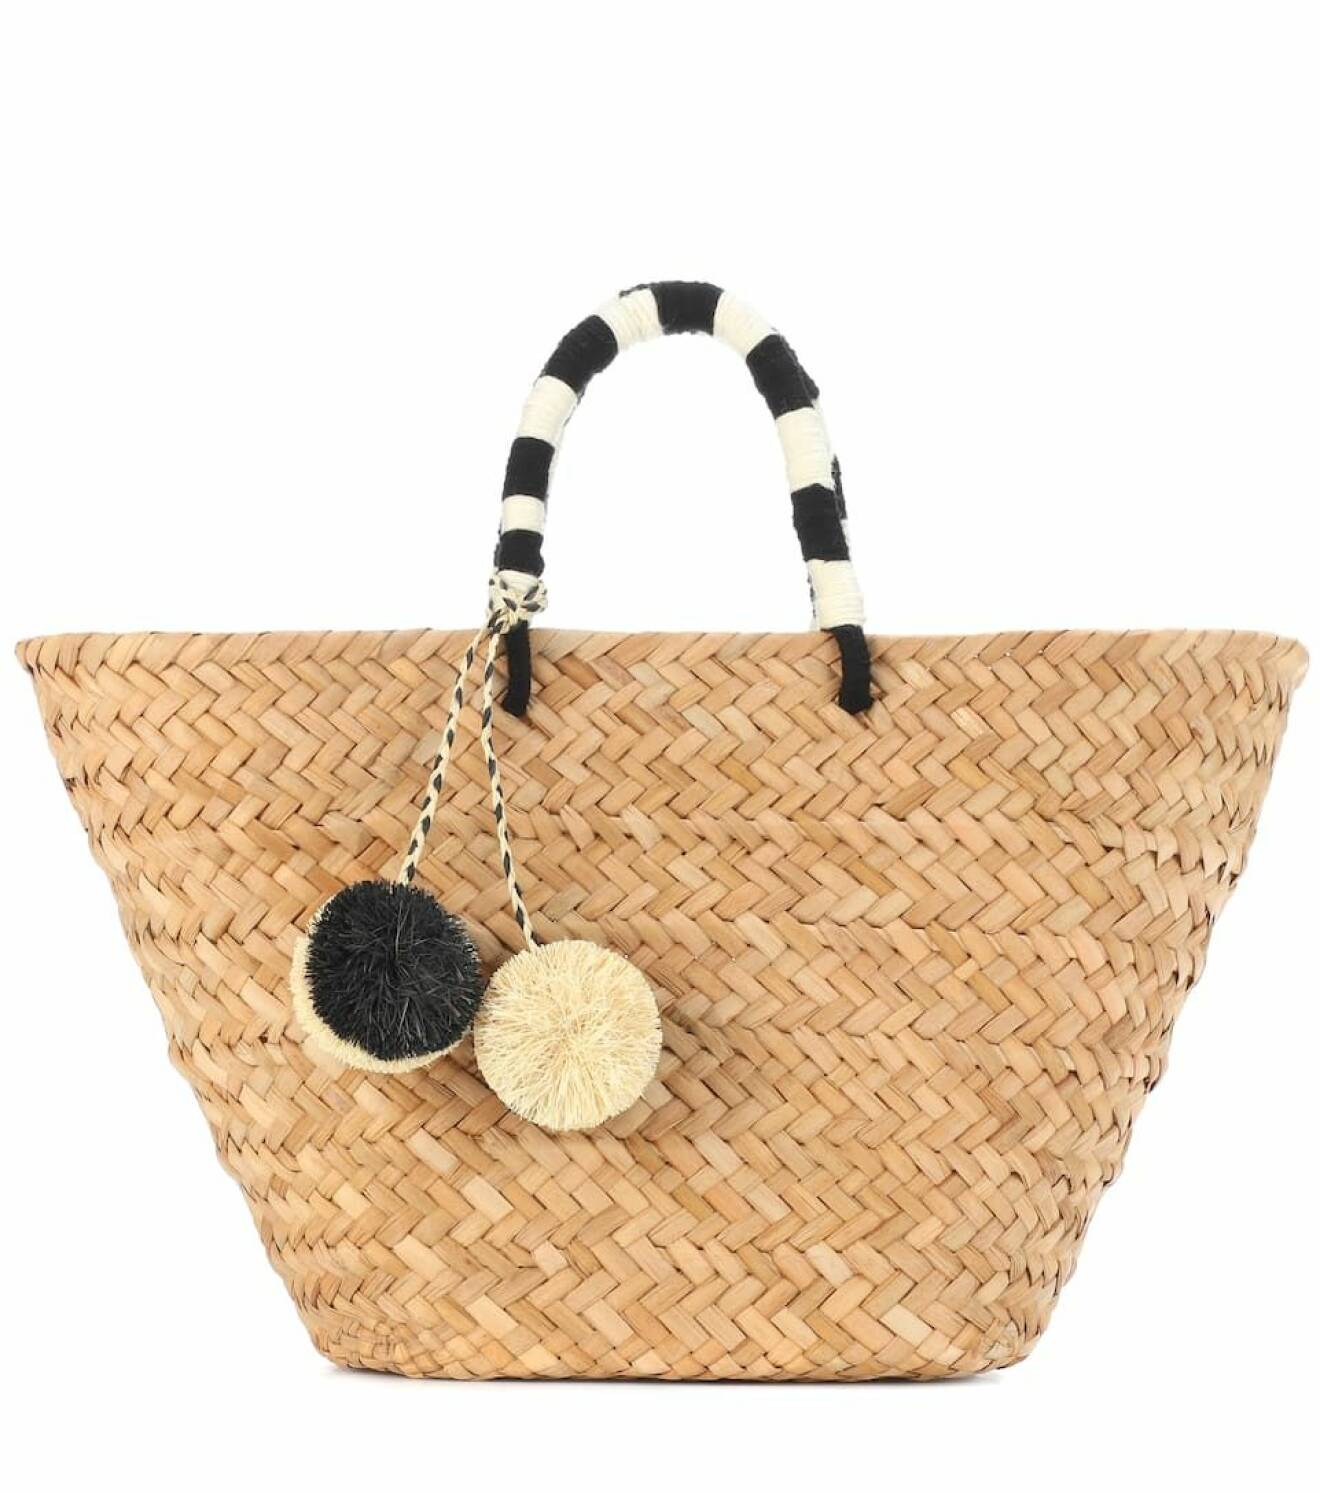 Stor stråväska med pompom-bollar i svart och vit från Kayu.